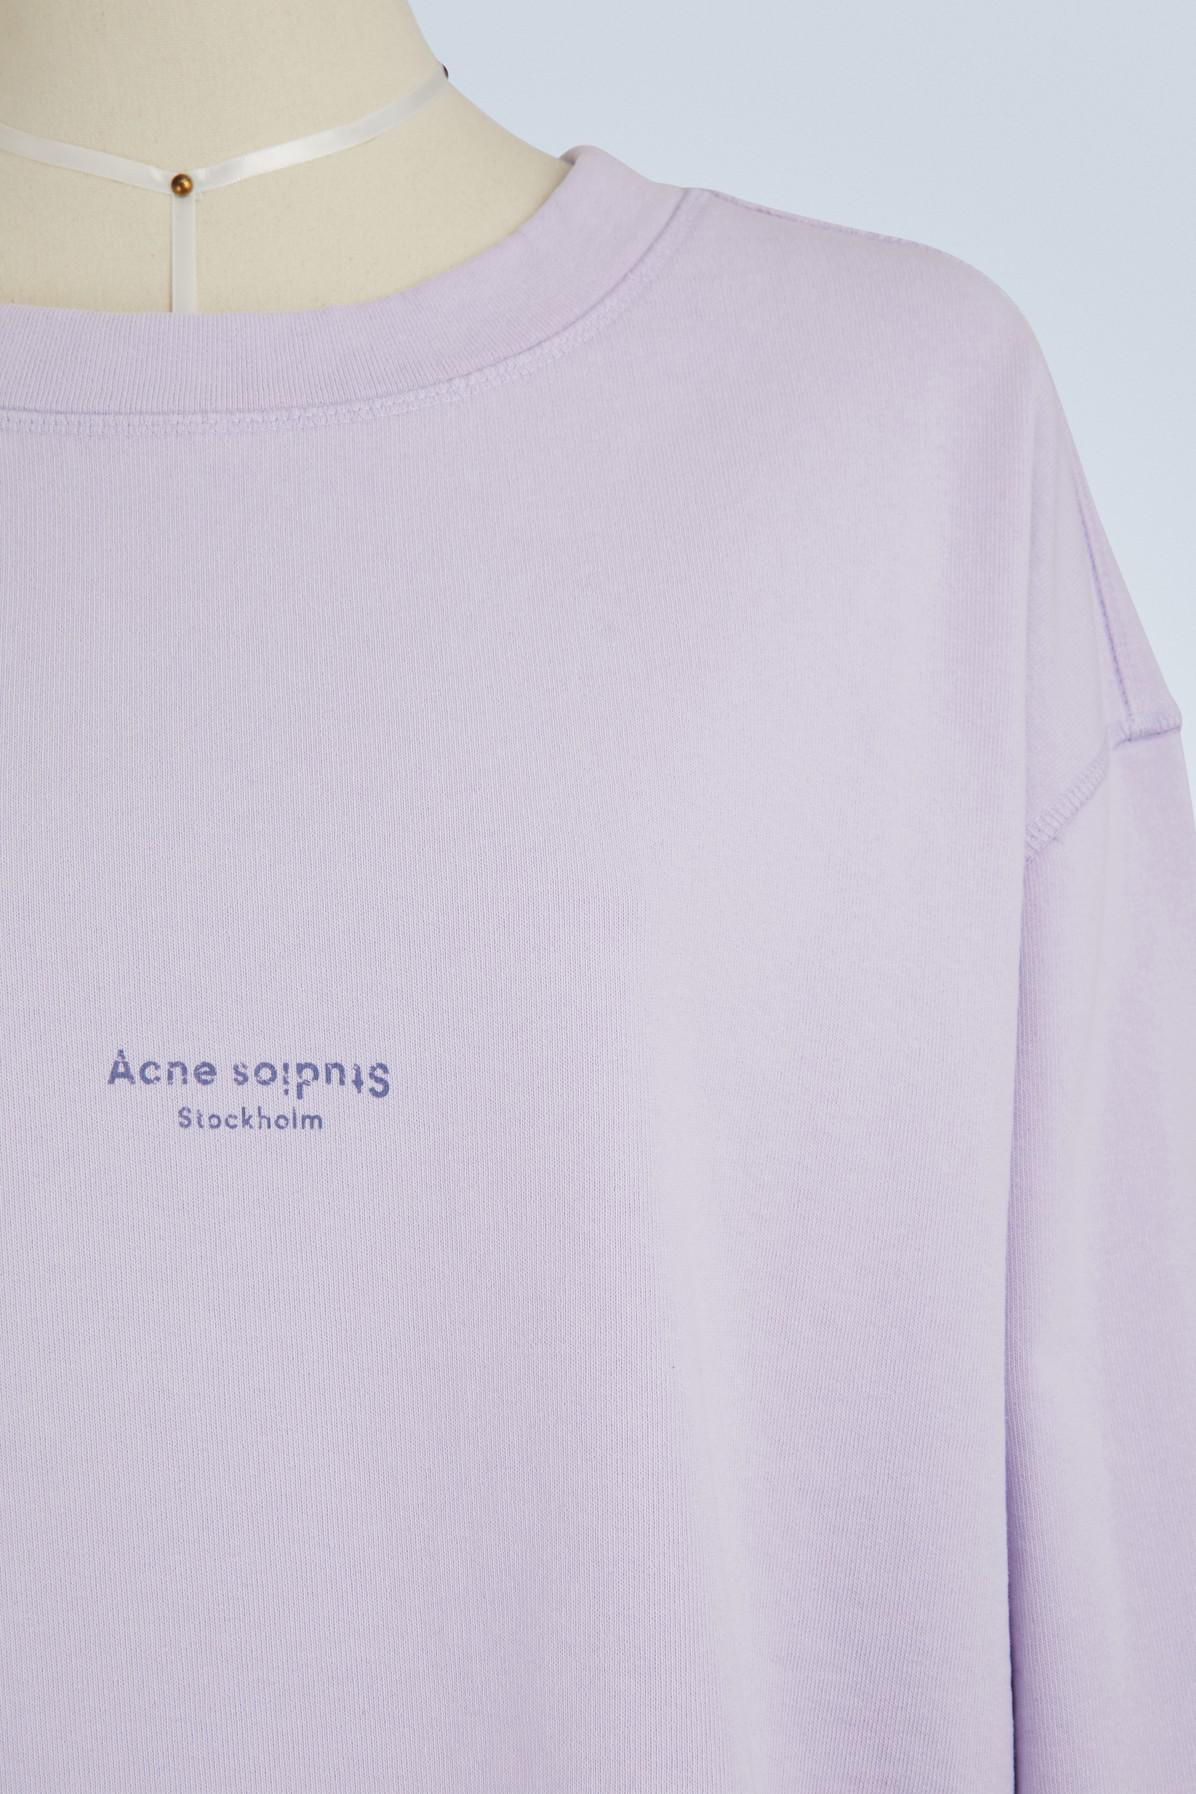 Acne Studios Lynn Cotton Sweatshirt in Chalk Lilac (Purple) - Lyst